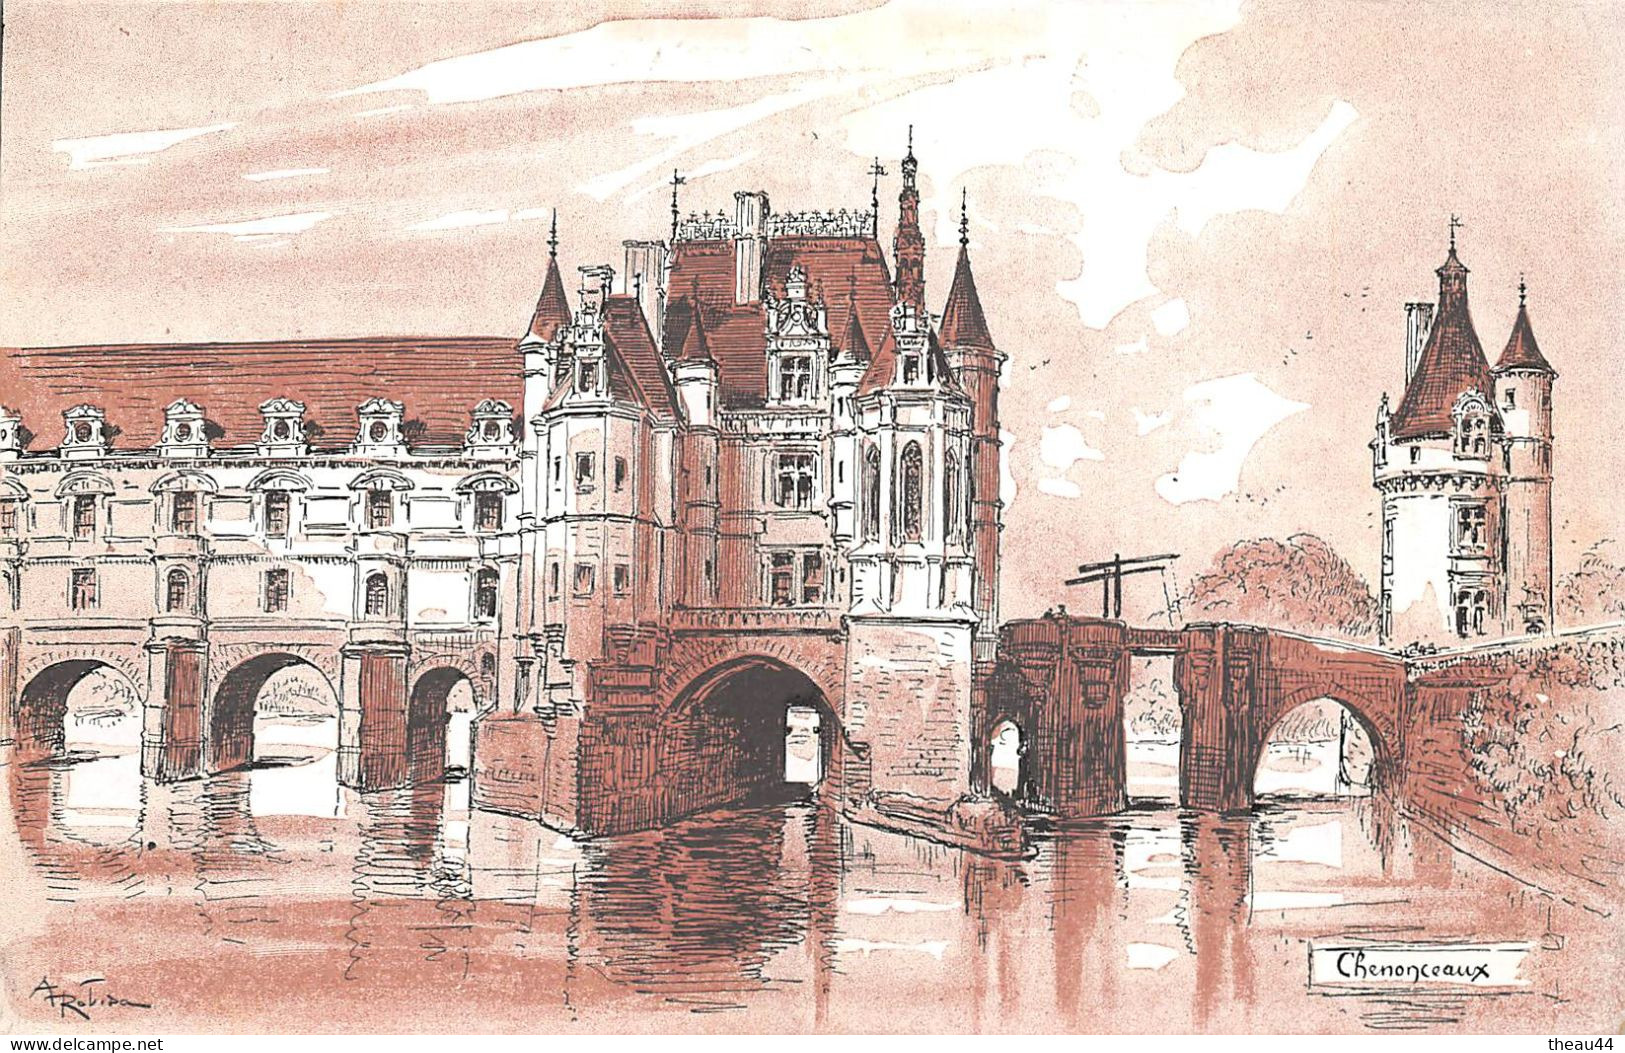 Illustrateur " ROBIDA " - Lot de 12 cpa des Chateaux de la Loire - Blois, Amboise, Langeais, Luynes, Chambord, Loches...